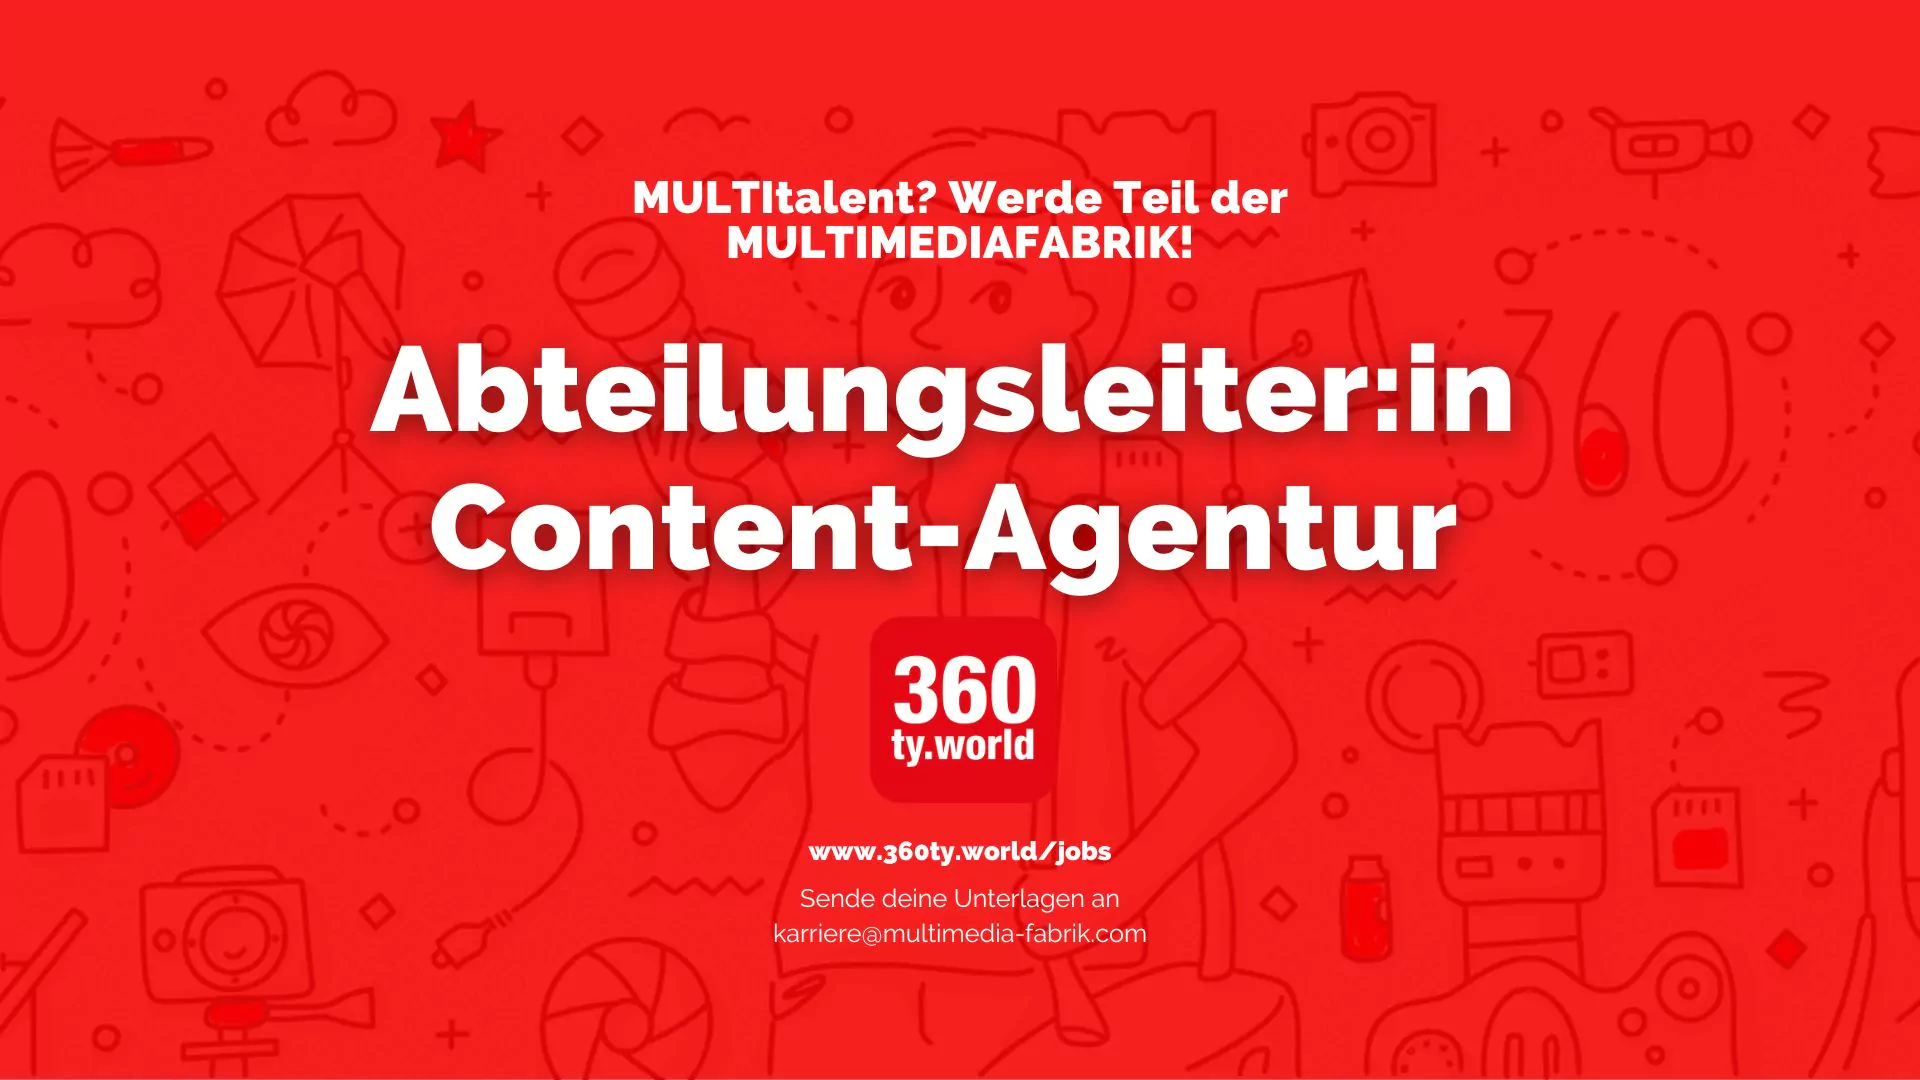 Abteilungsleitung Content-Agentur (m/w/d)